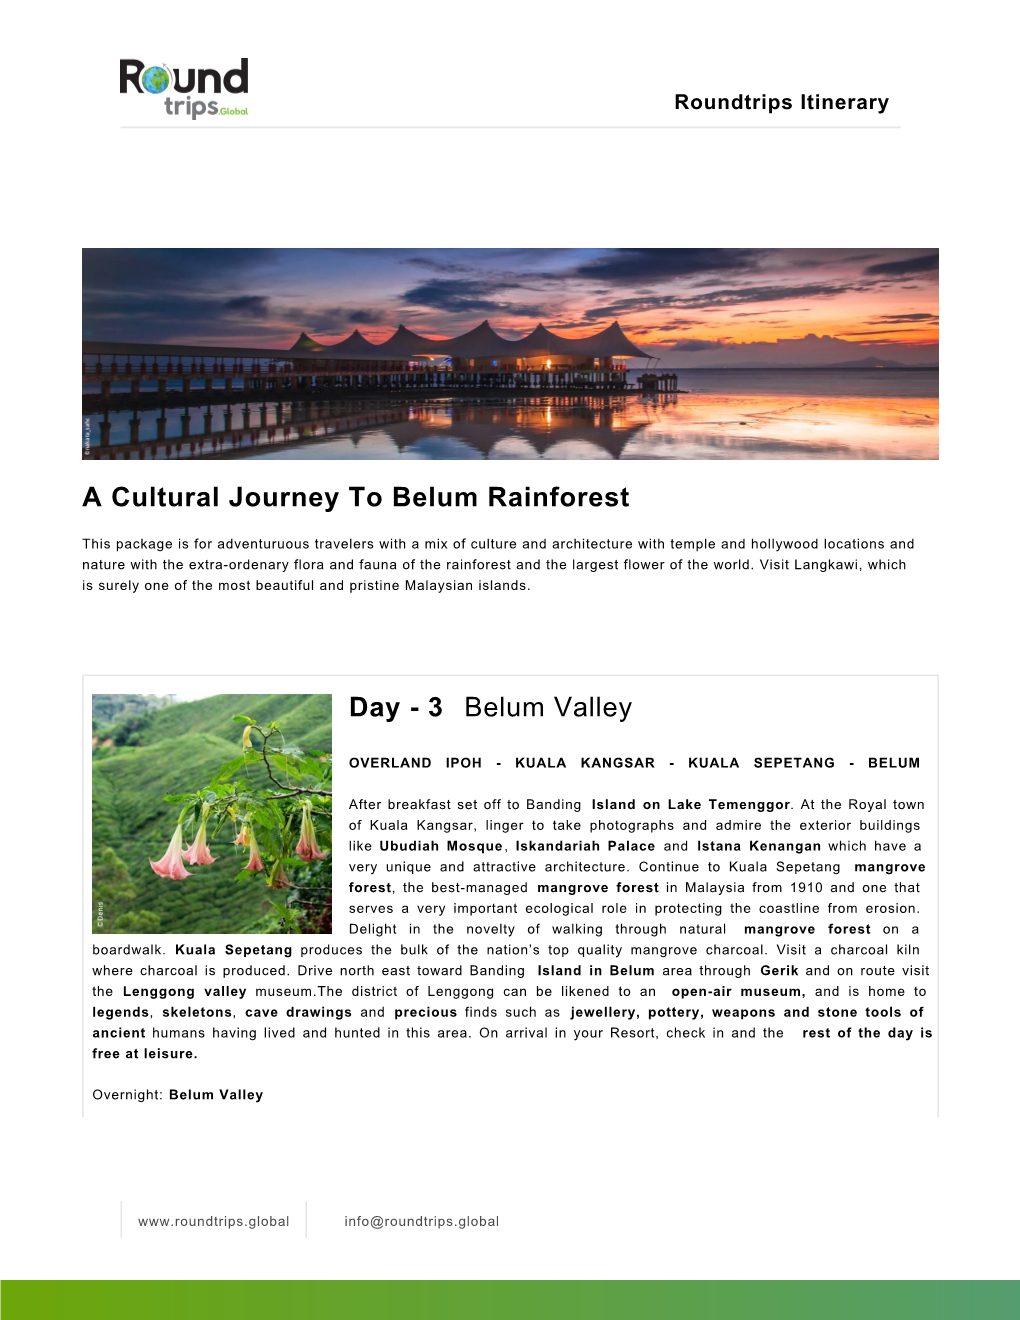 A Cultural Journey to Belum Rainforest